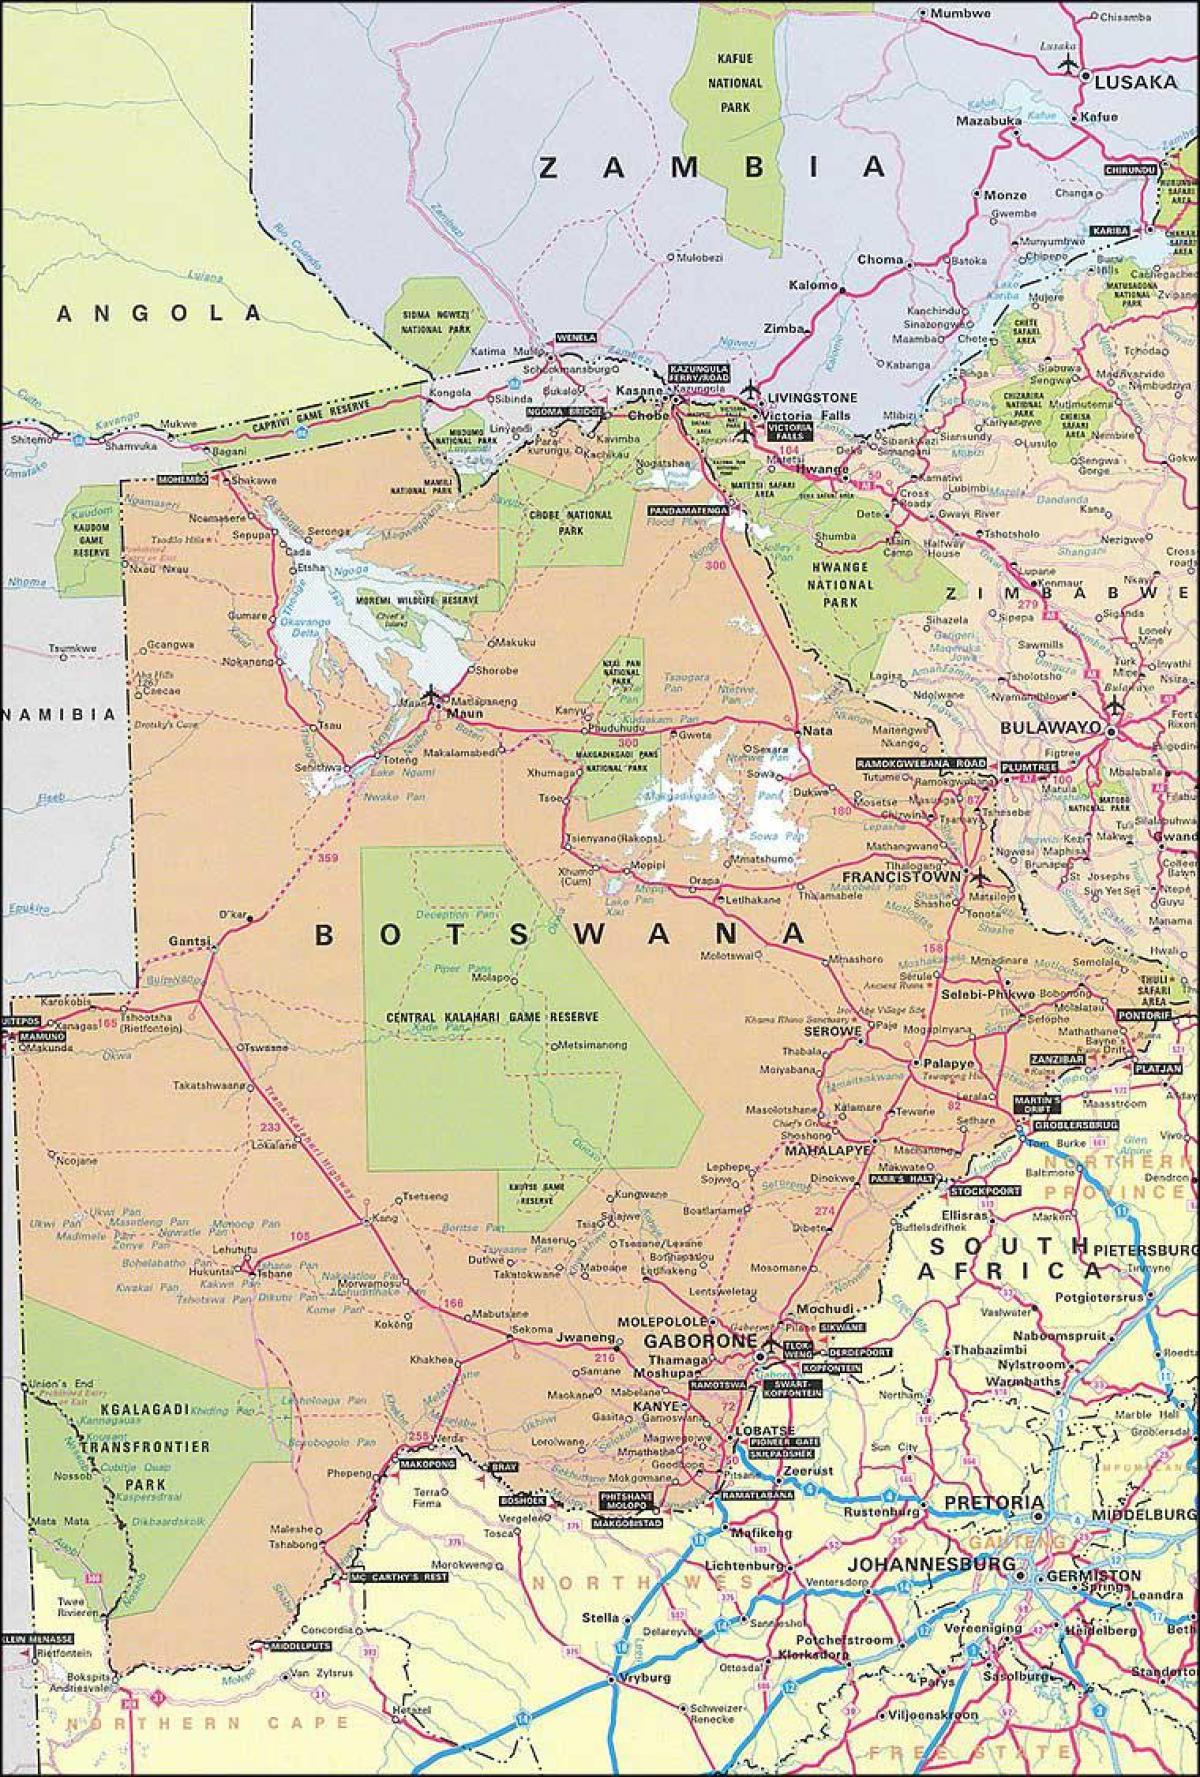 térkép részletes térképe Botswana